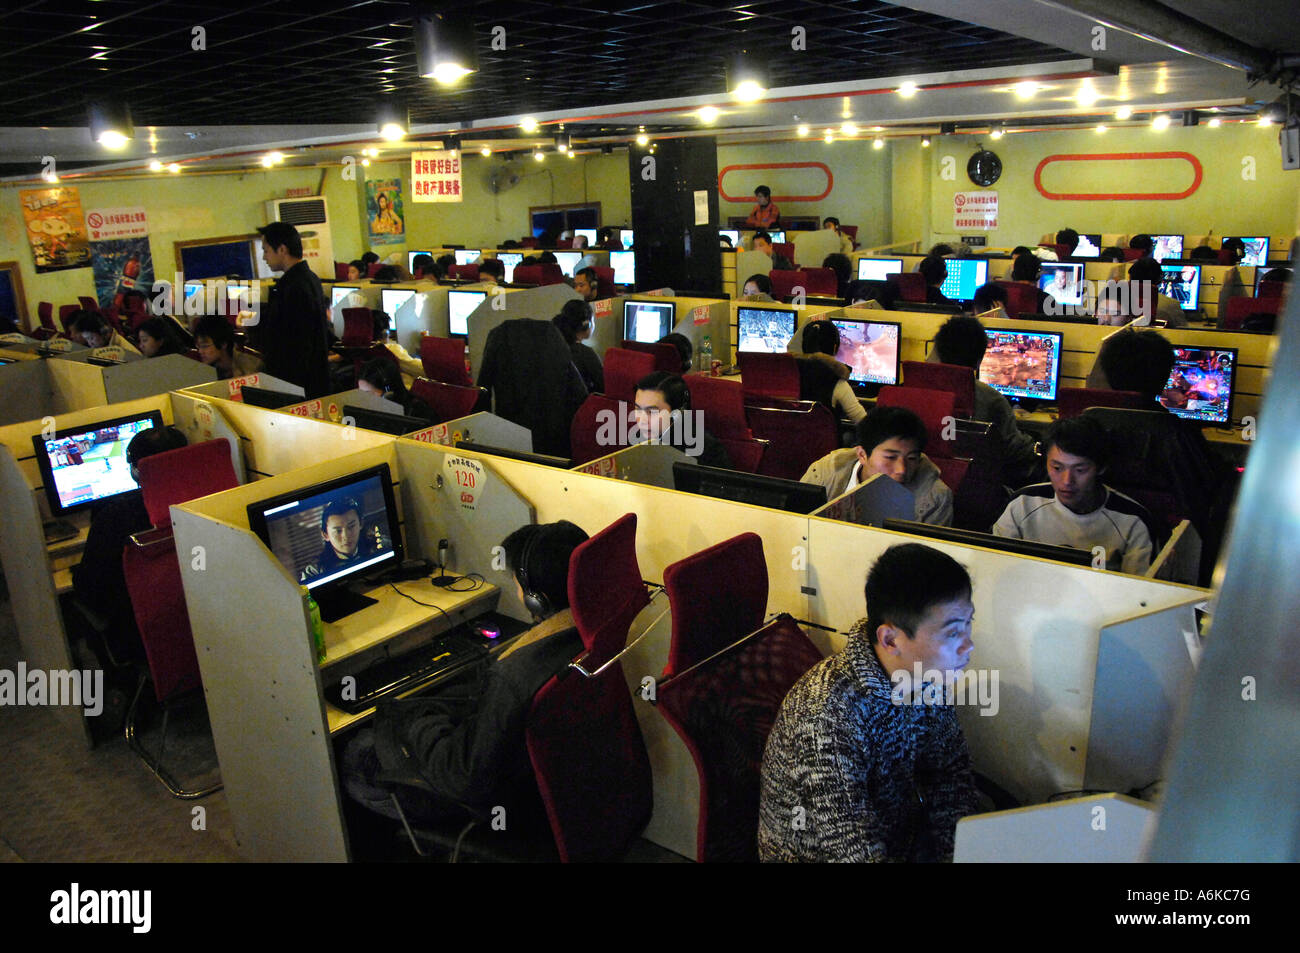 A packed internet cafe in Nanchang, Jiangxi, China. 26 FEB 2007 Stock Photo